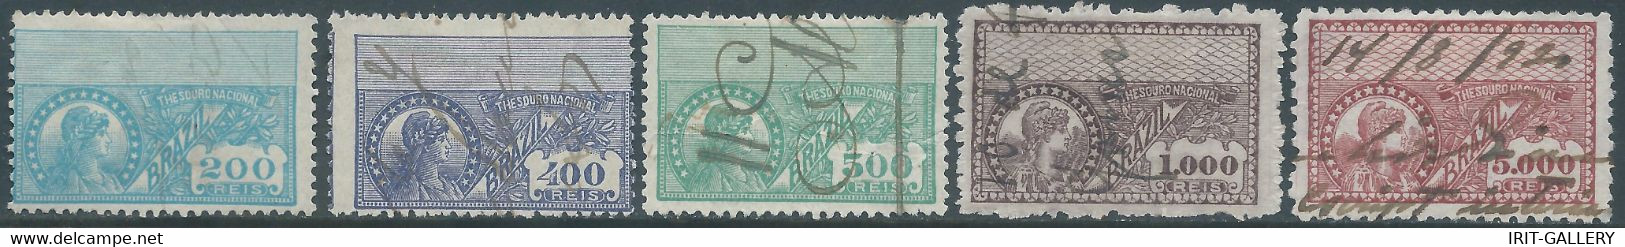 Brasil - Brasile - Brazil,1920 Revenue Stamp Tax Fiscal,National Treasure,Used - Service